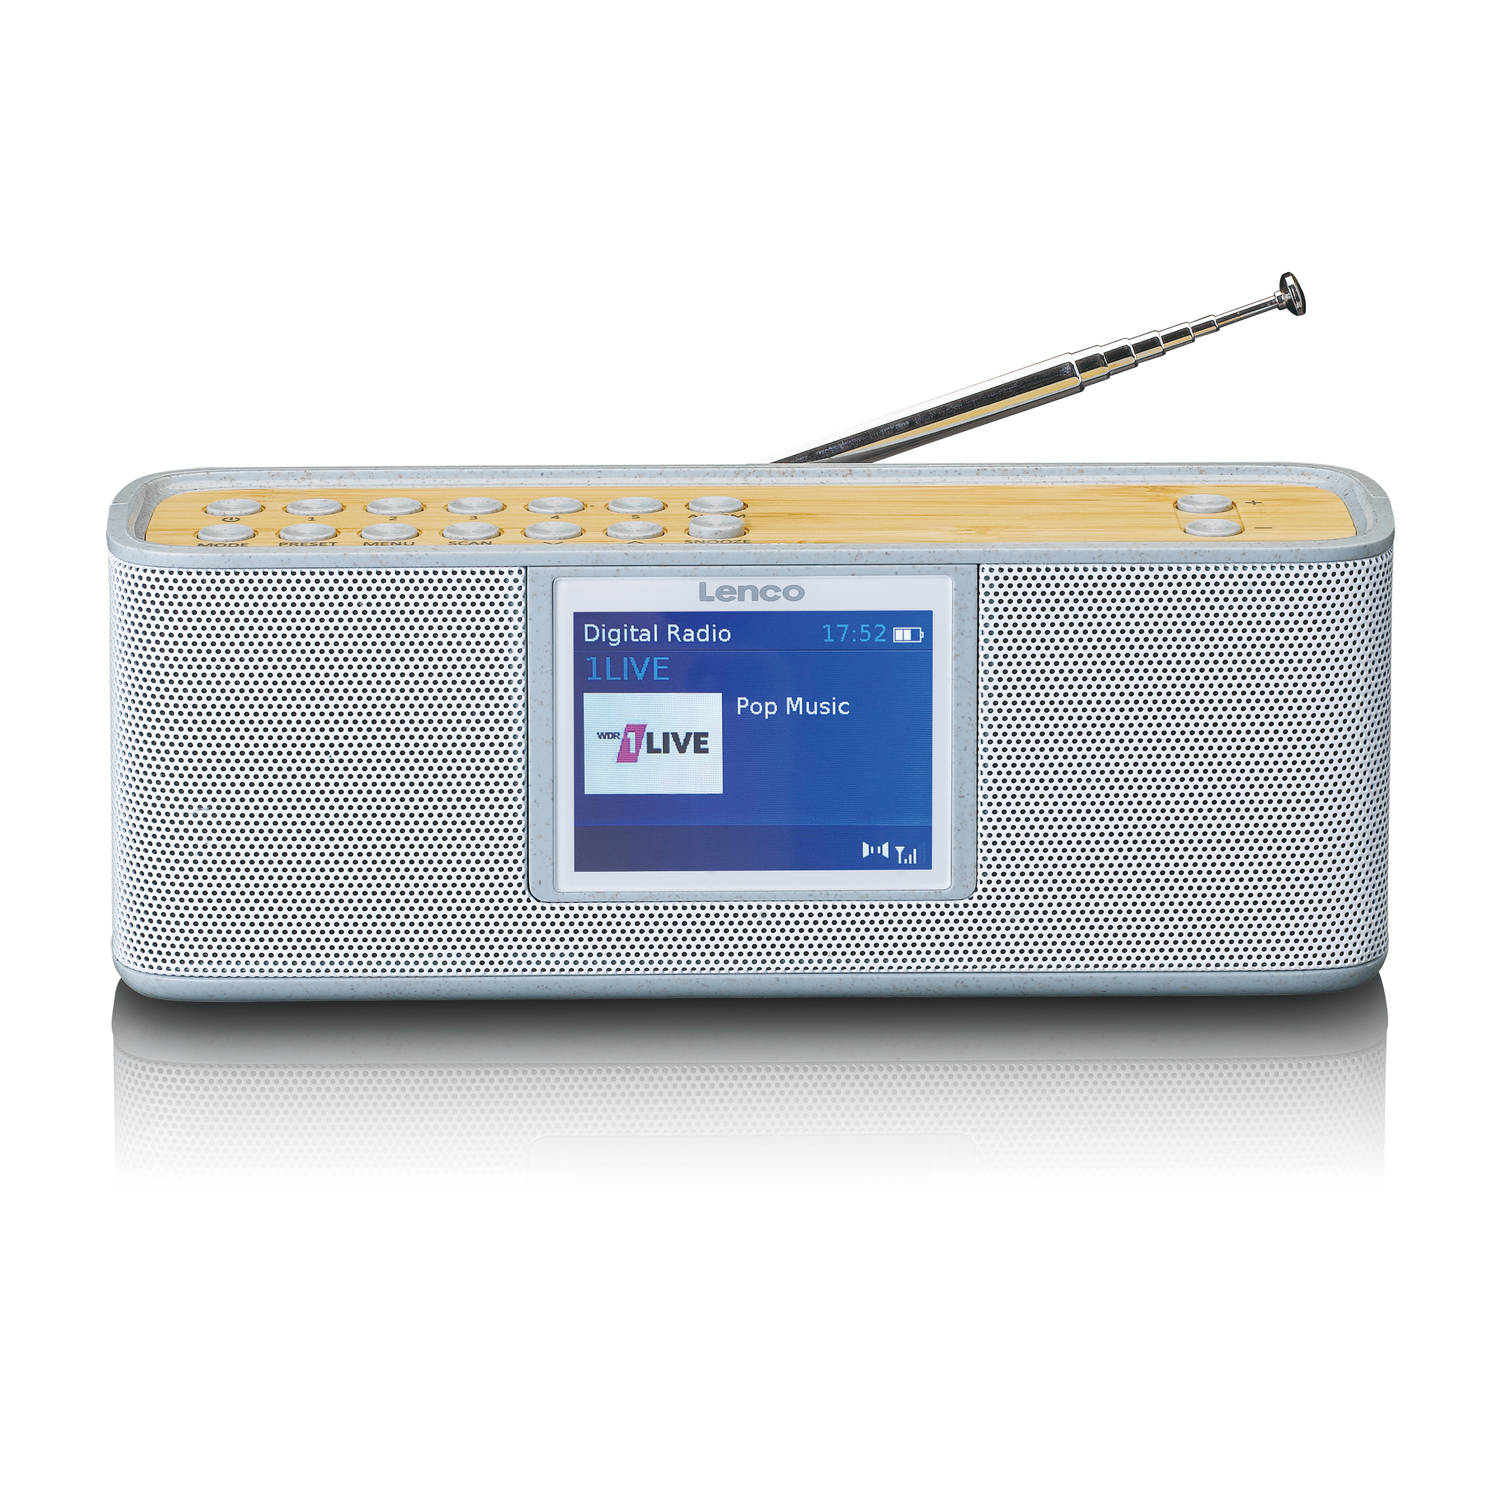 Lenco Digitale radio (dab+) PDR-046GY DAB+-FM Radio